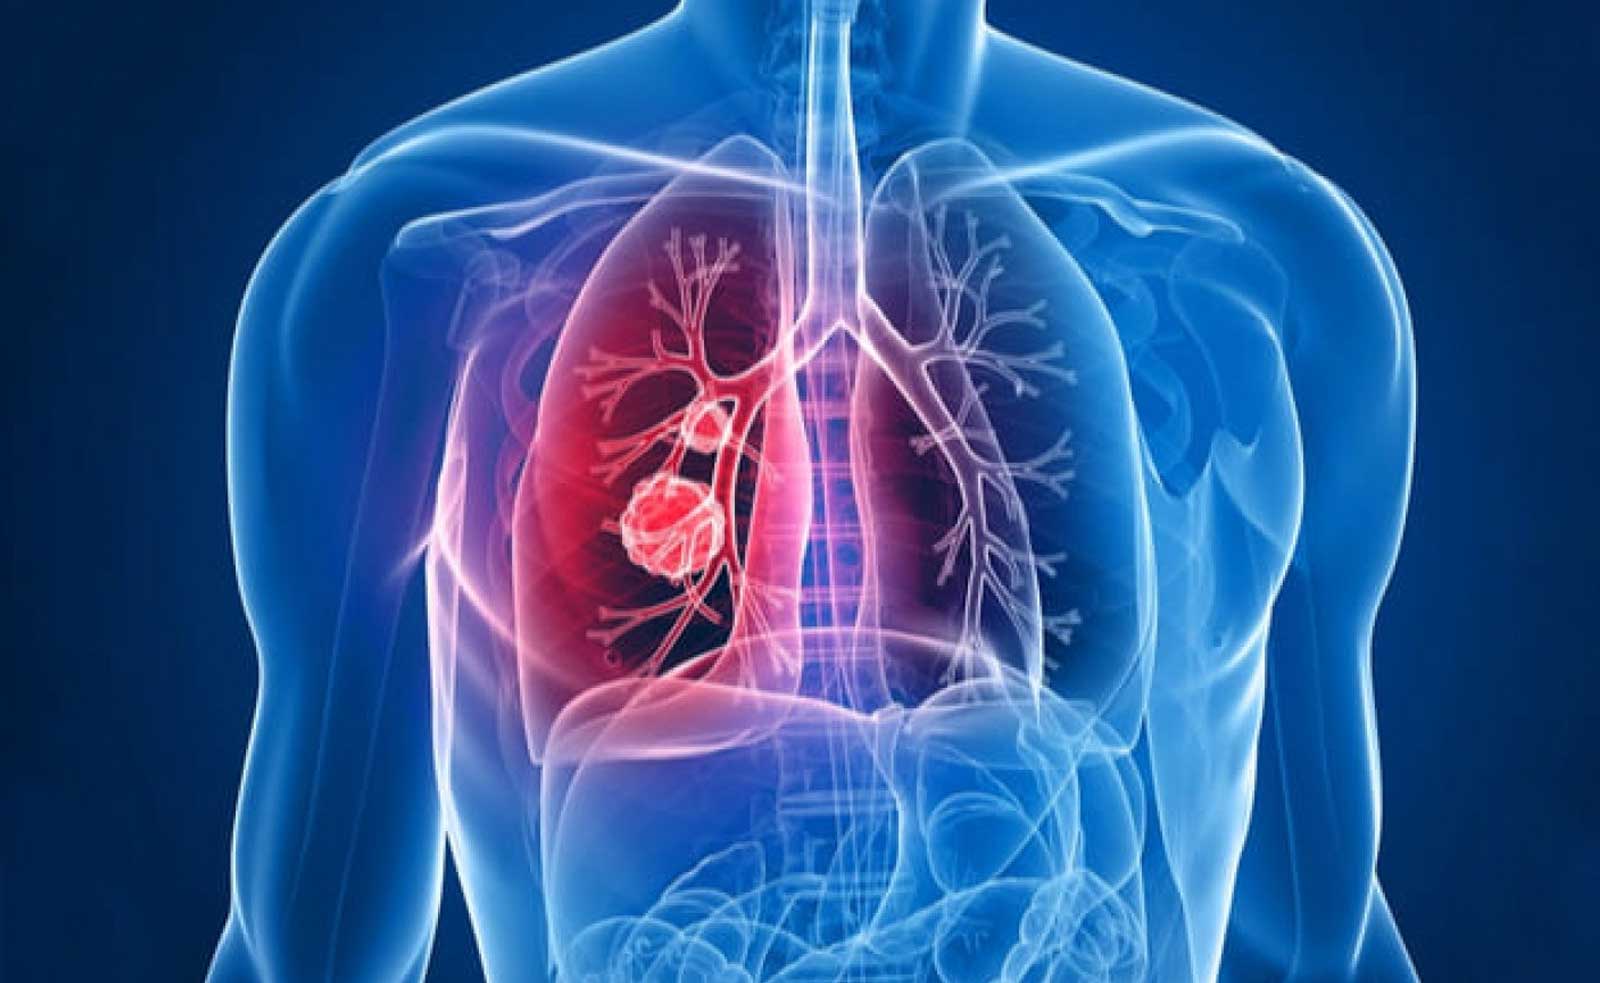 conoce embolia pulmonar como puede afectar salud